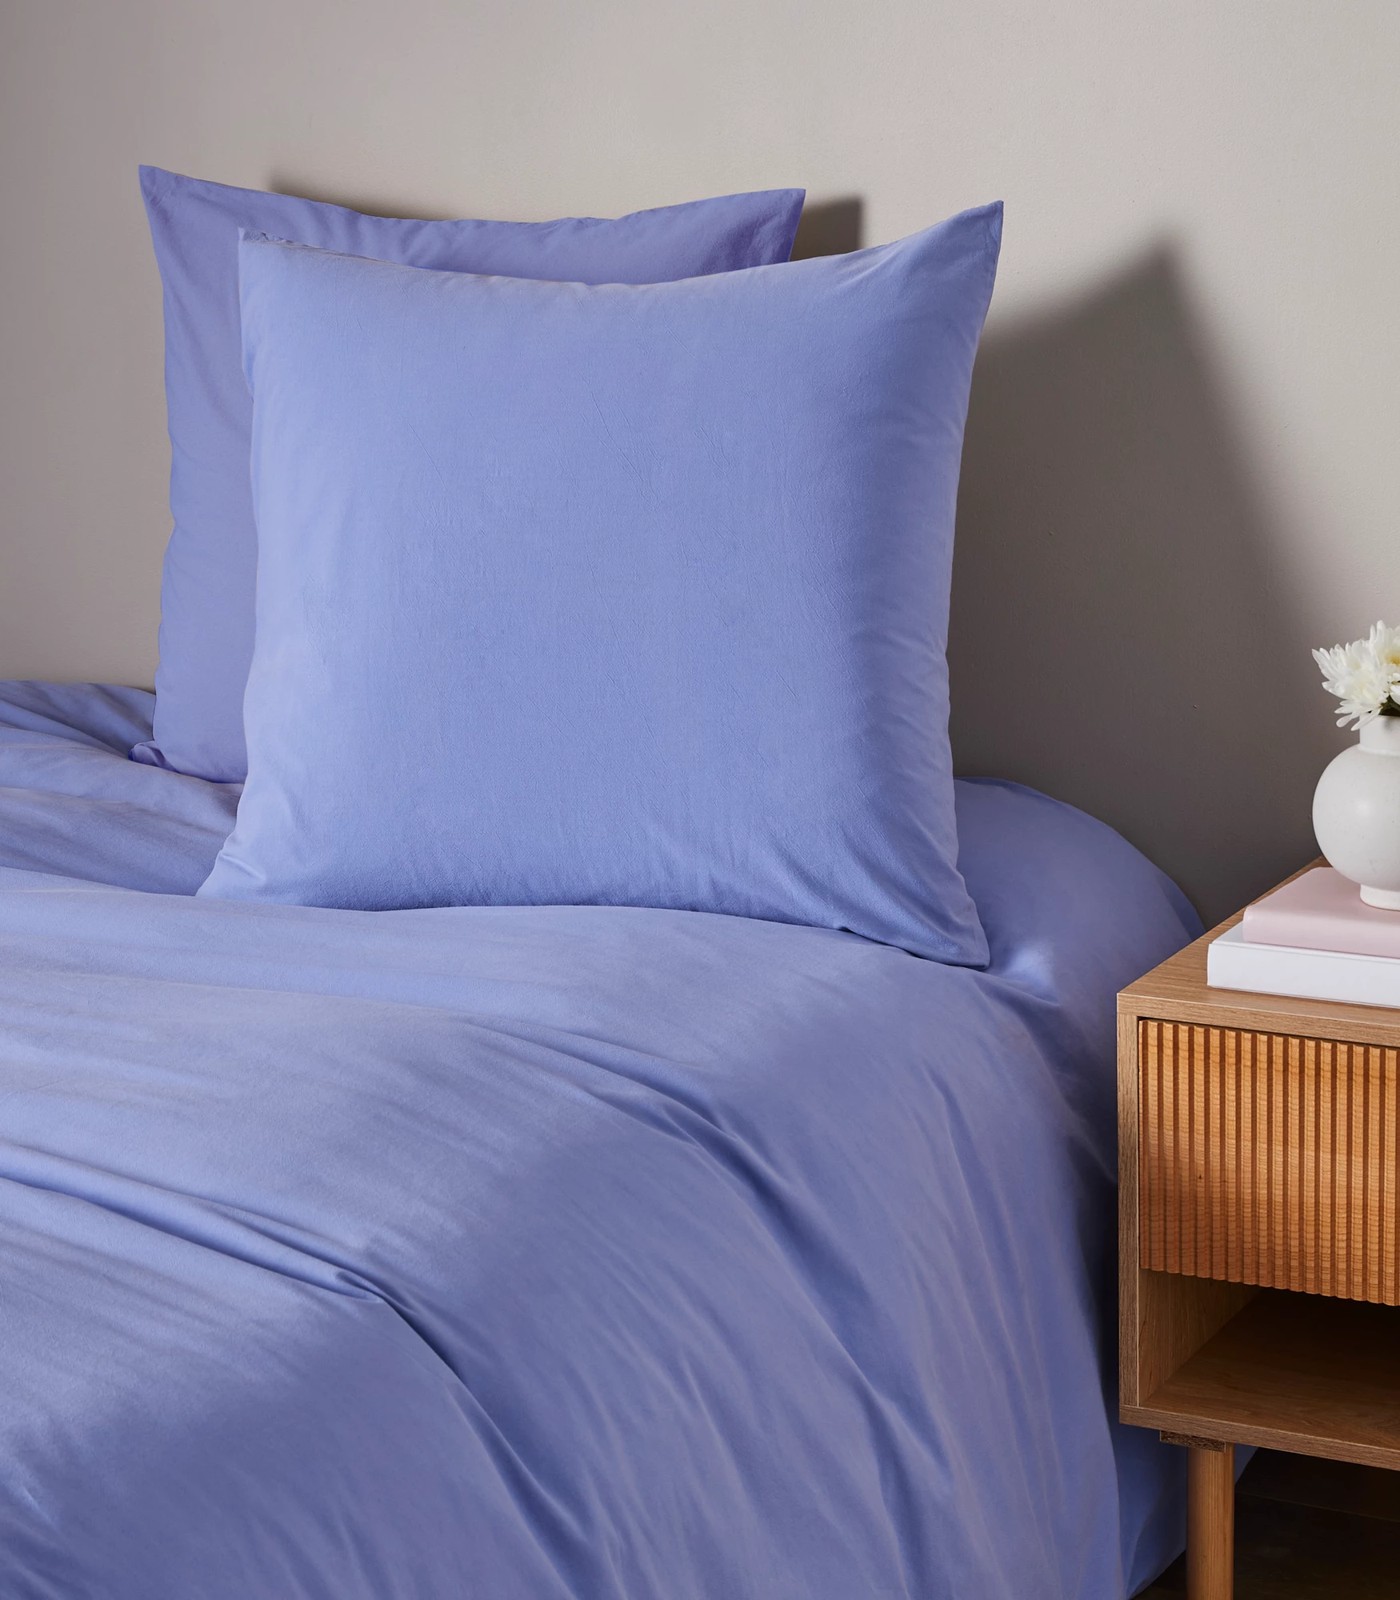 Arlo Stonewash European Pillowcase - Bright Blue | Target Australia